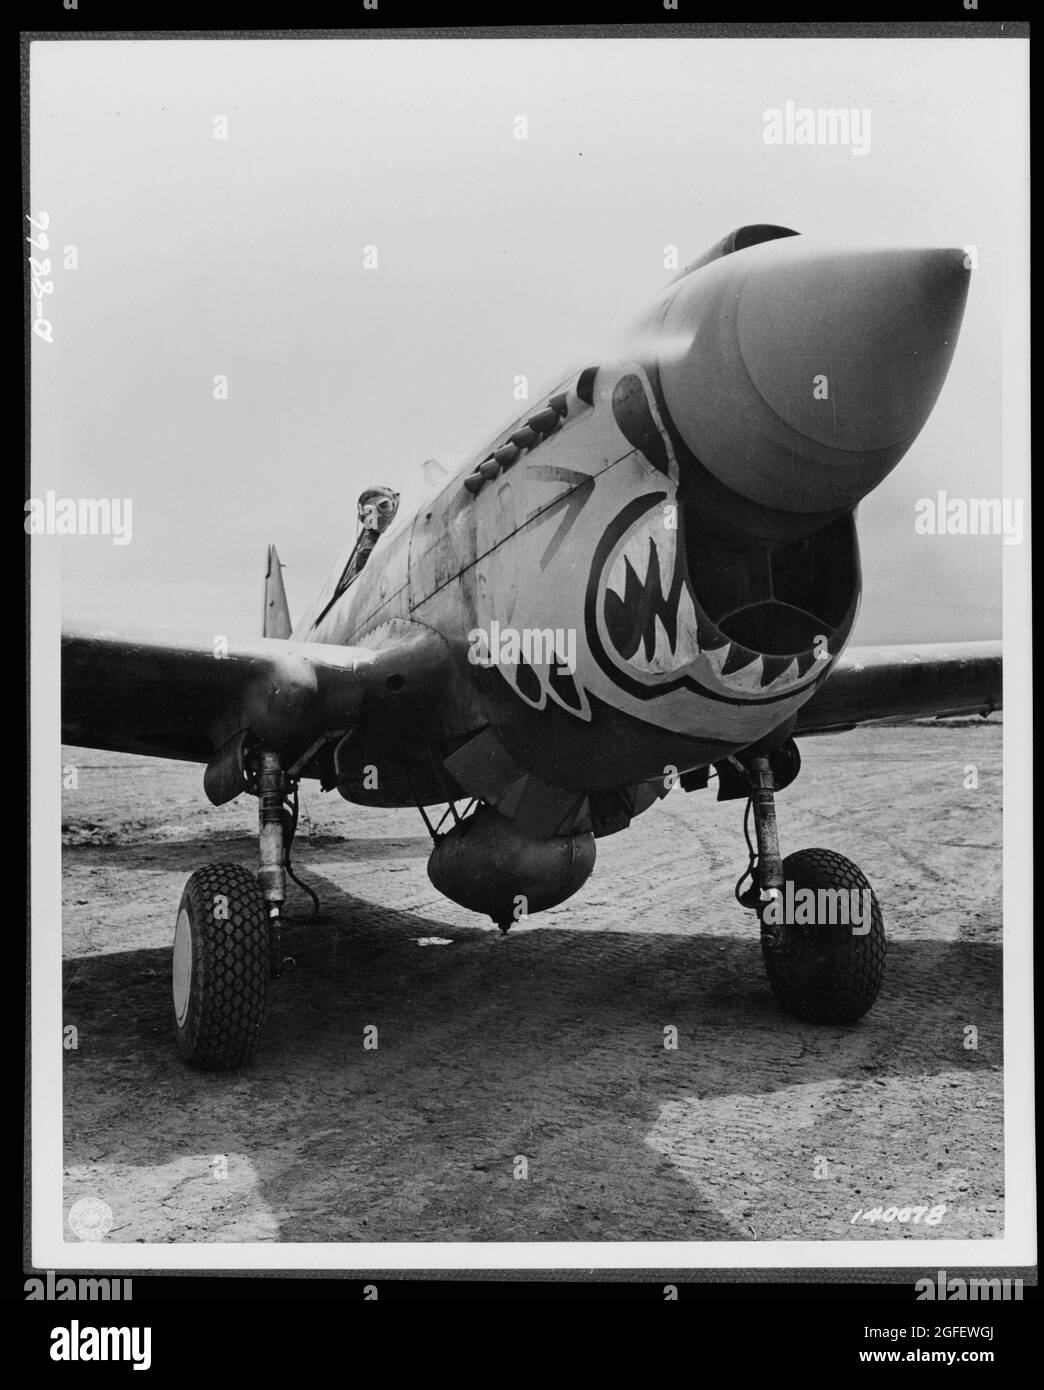 Velivolo. Esercito. Uno dei "Flying Tigers" raddoppiati, pronto a decollo da un punto dell'Alaska in un aereo da caccia Curtiss P-40 "Warhawk". 1944. Foto Stock